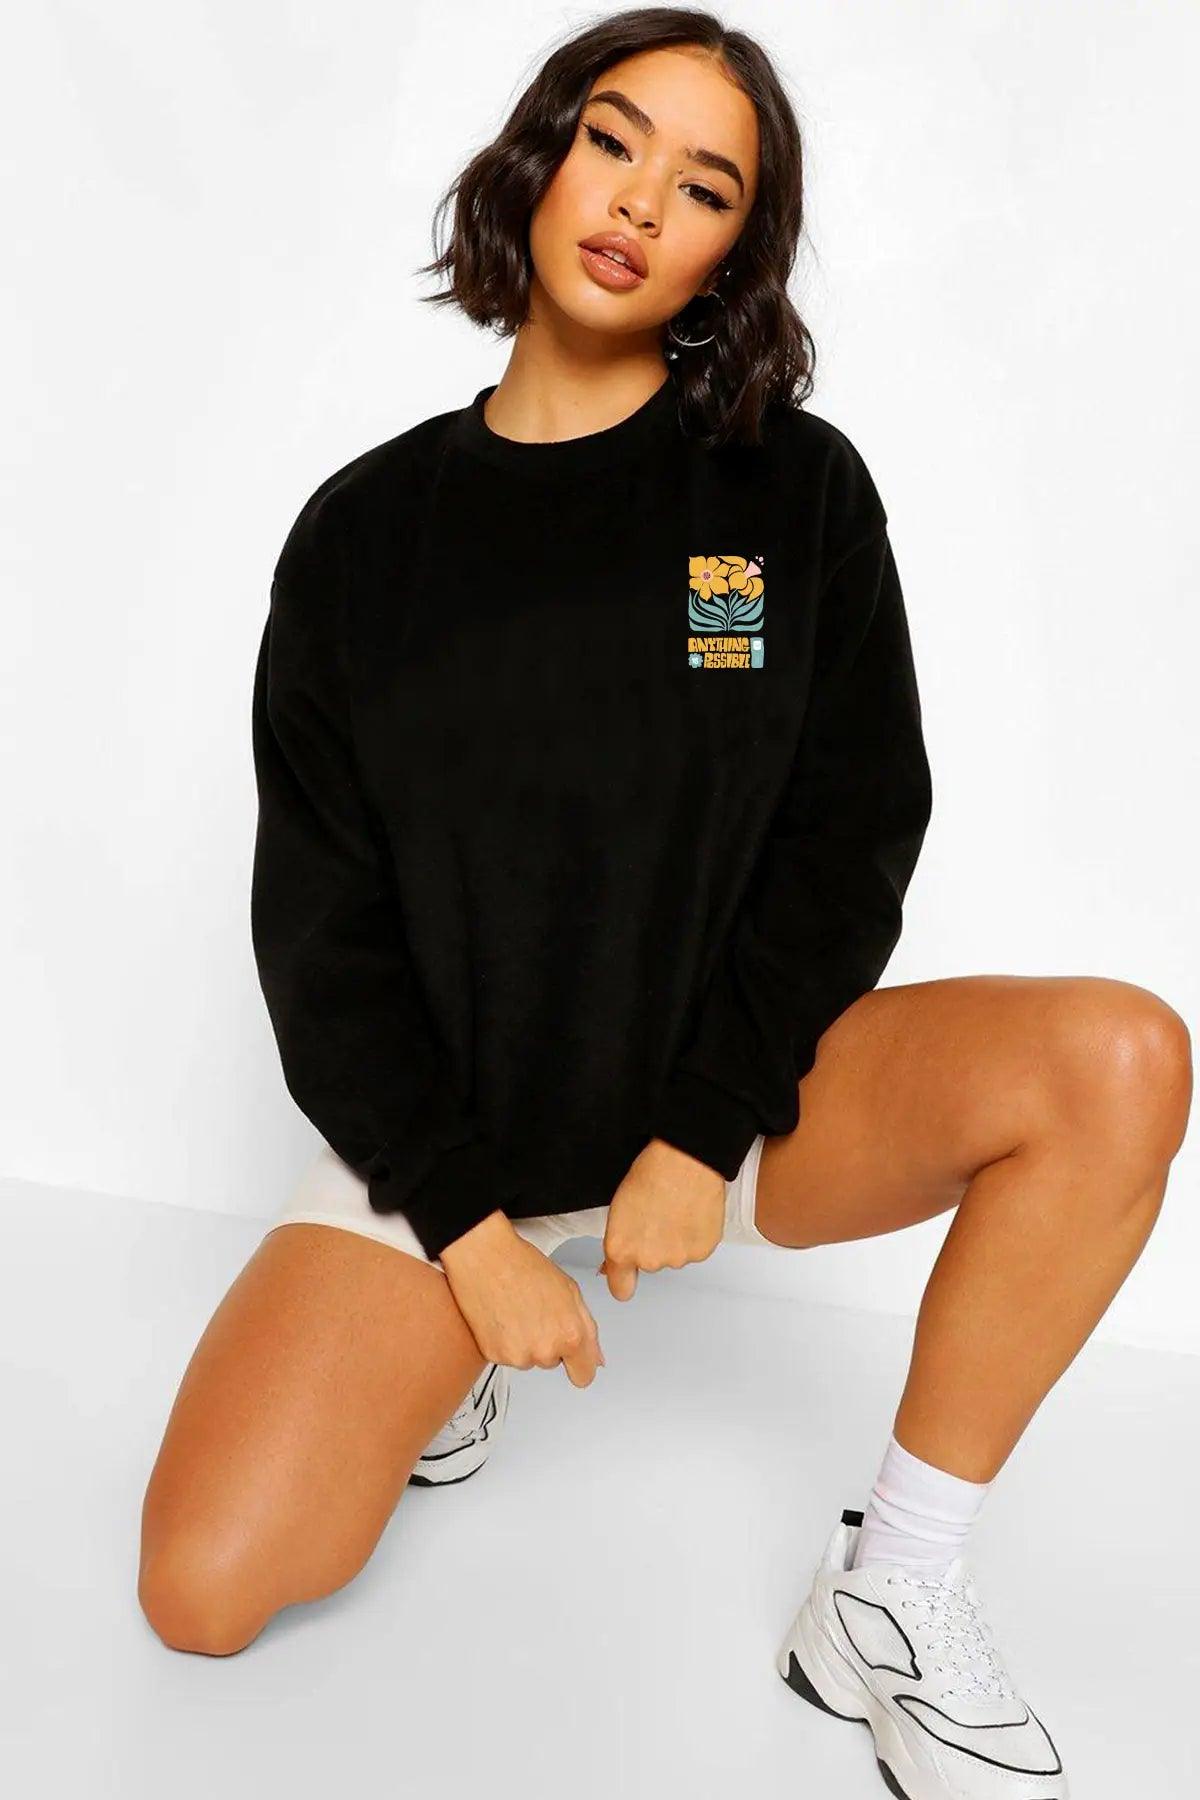 Anything Possible Oversize Kadın Sweatshirt - PΛSΛGE